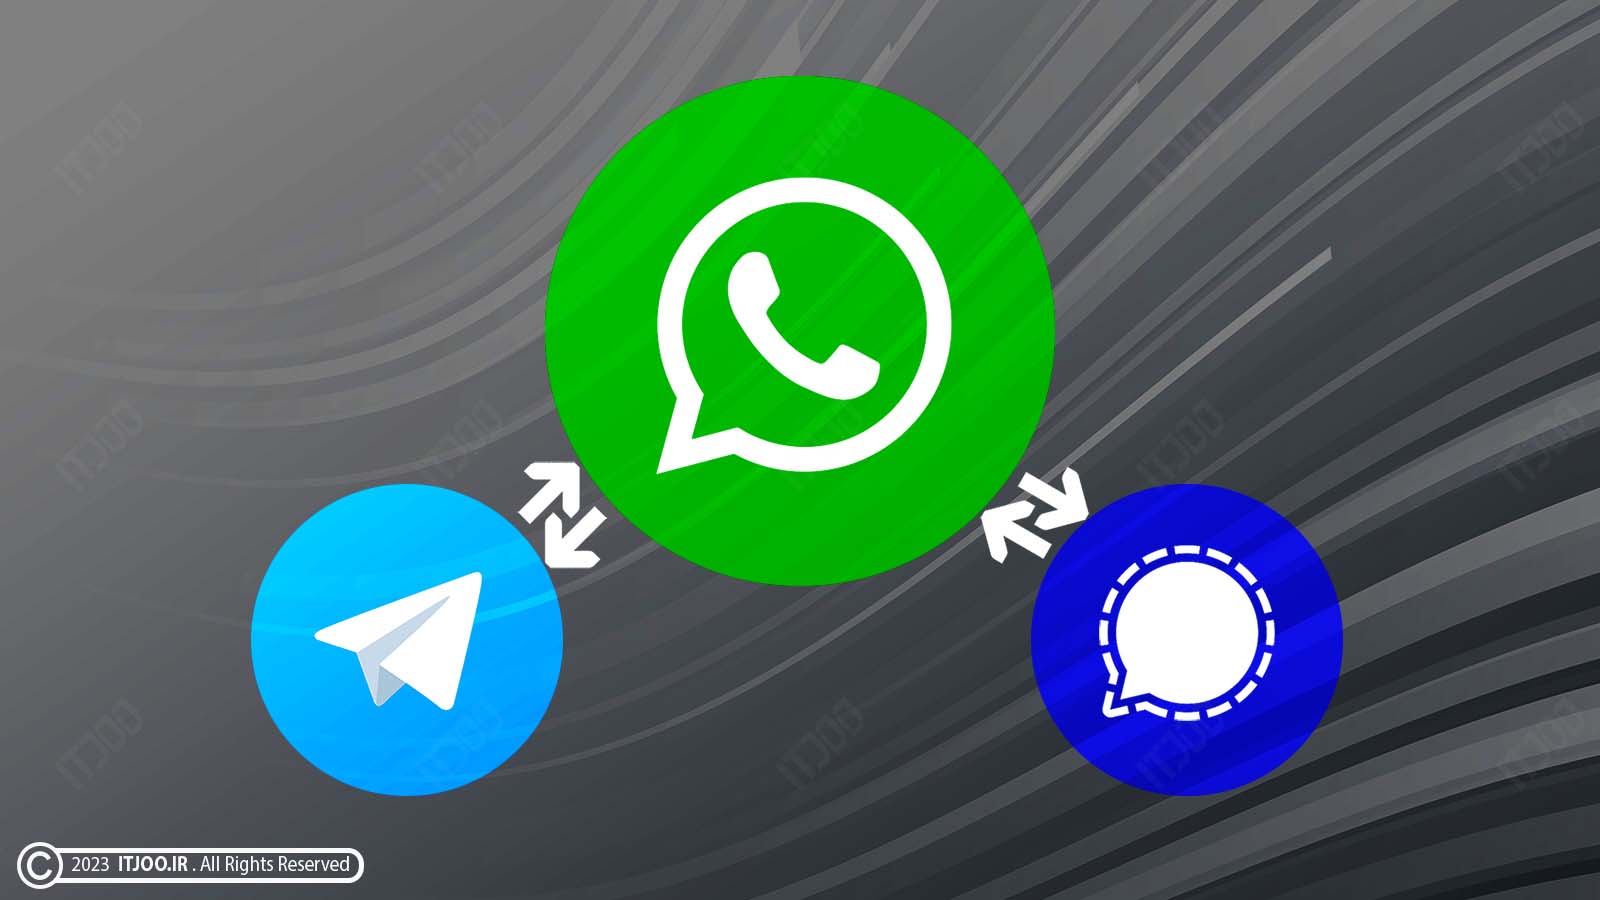 واتس‌اپ در حال آزمایش اتصال به سایر پیام‌رسان‌ها مانند تلگرام و سیگنال است
